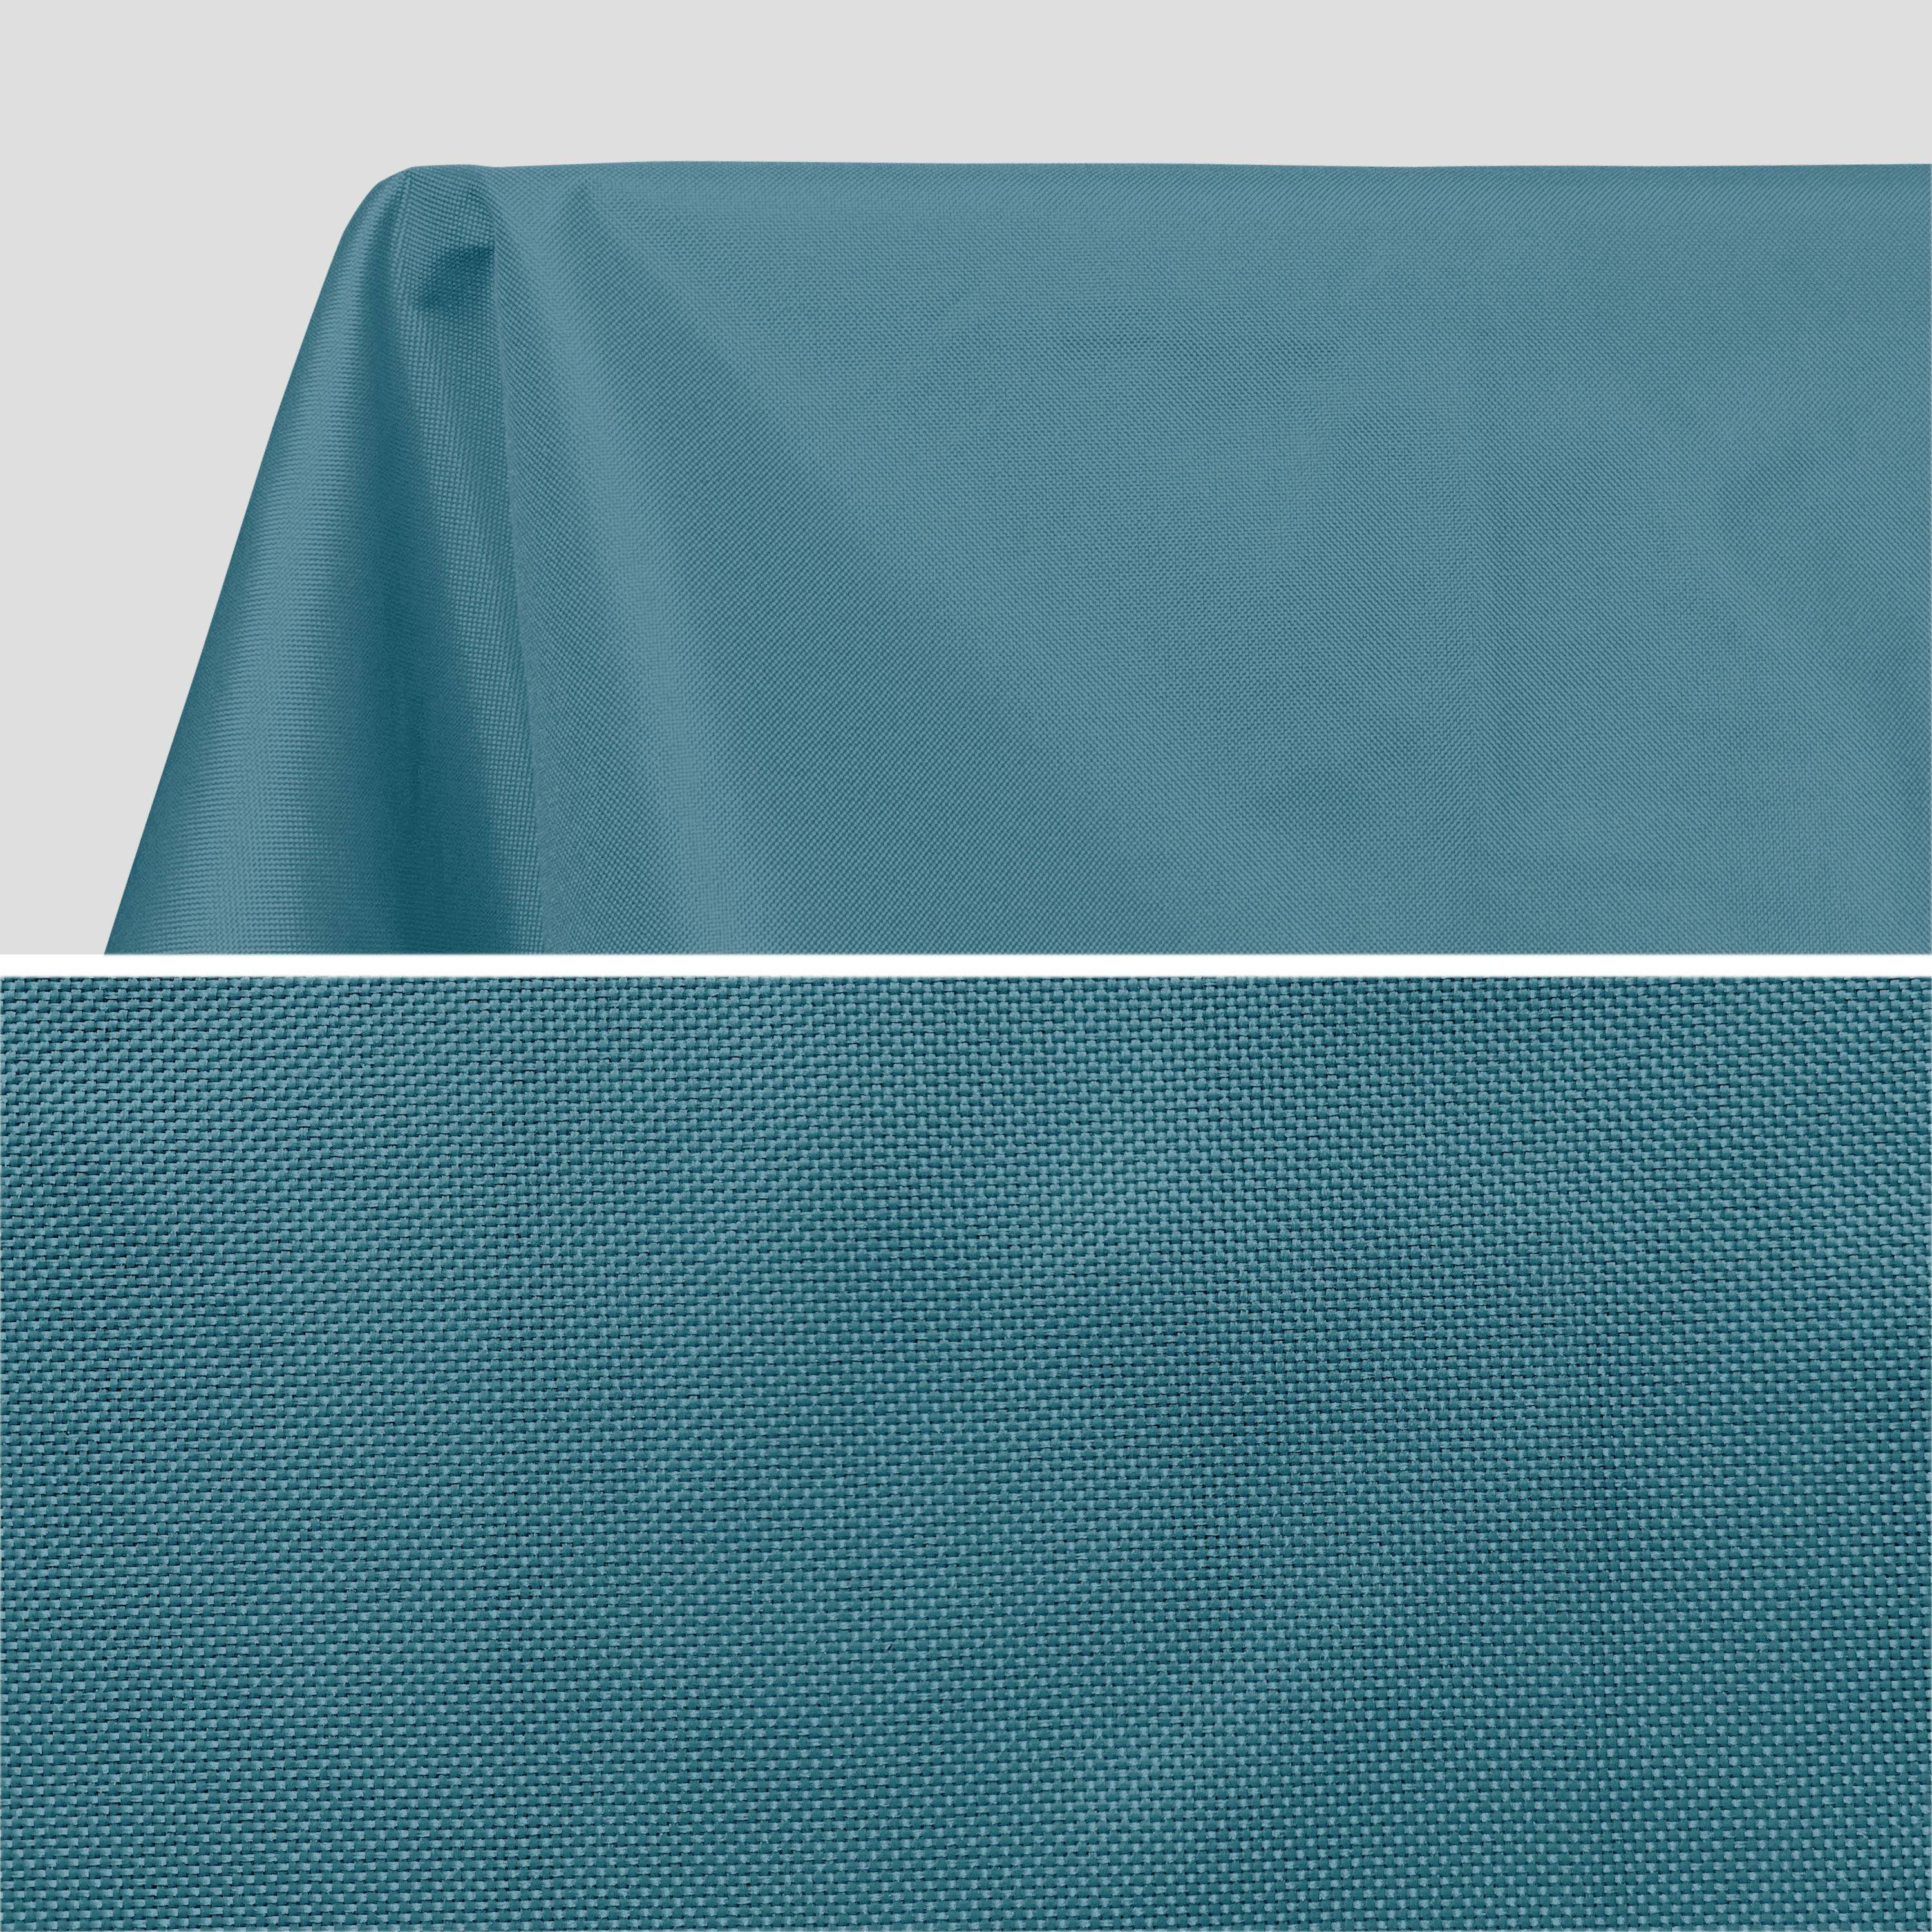 Kollection EXOTIQUE - Outdoor-Tischdecke 300 x 140 cm Entenblau, 100% Polyester, schützt den Tisch, UV-Schutz, sommerlicher Stil Photo2